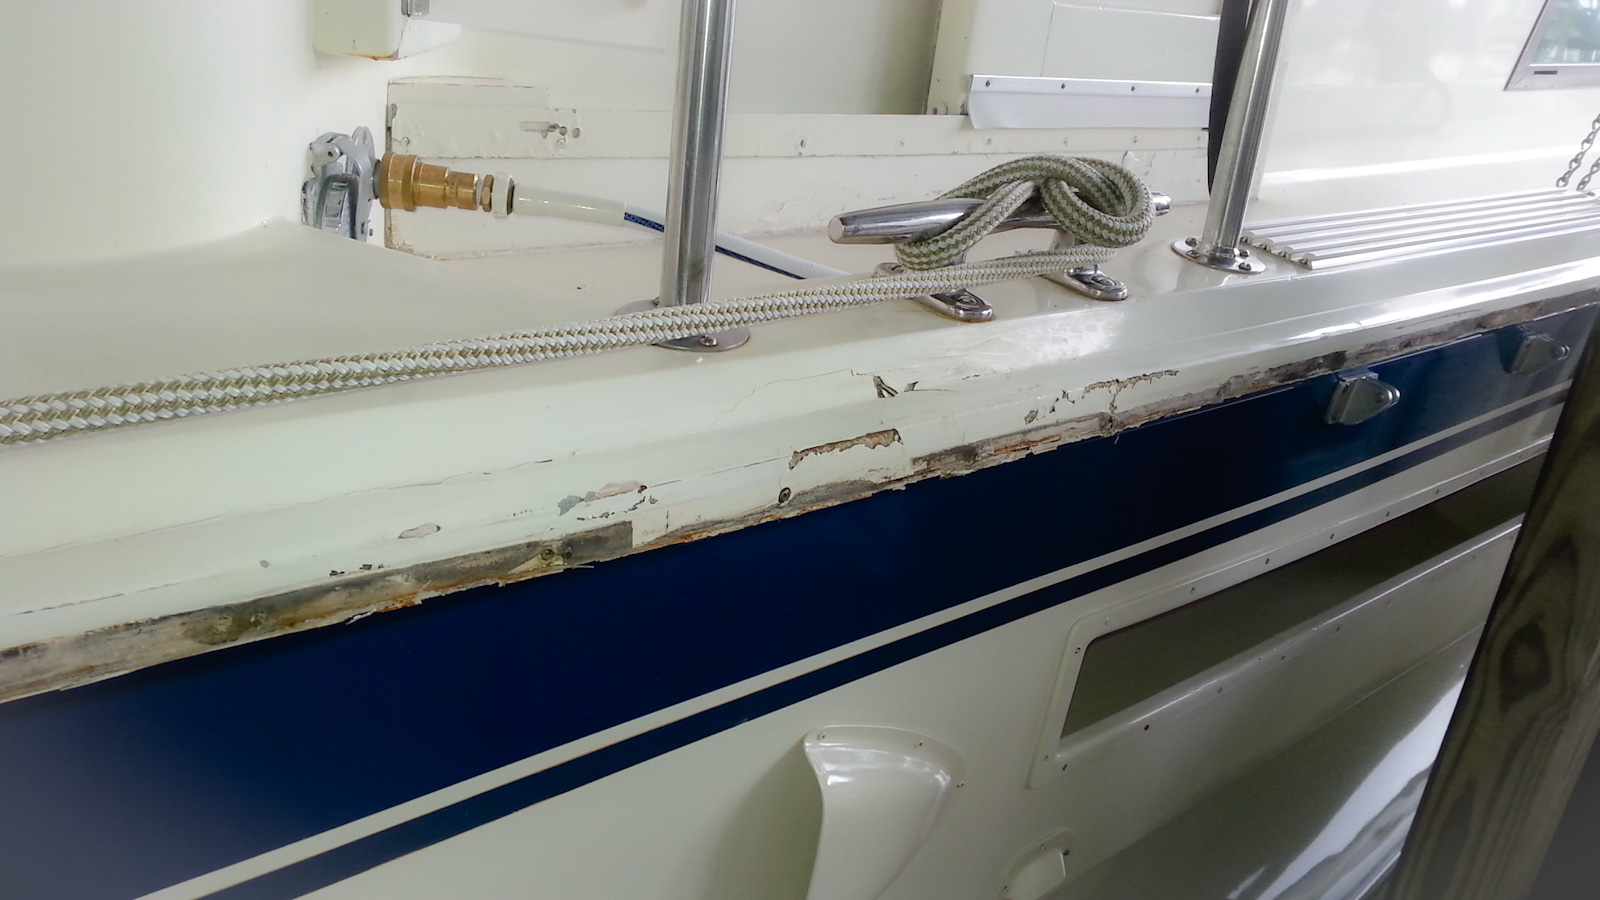 Boat seat vinyl repair : r/boatrepair